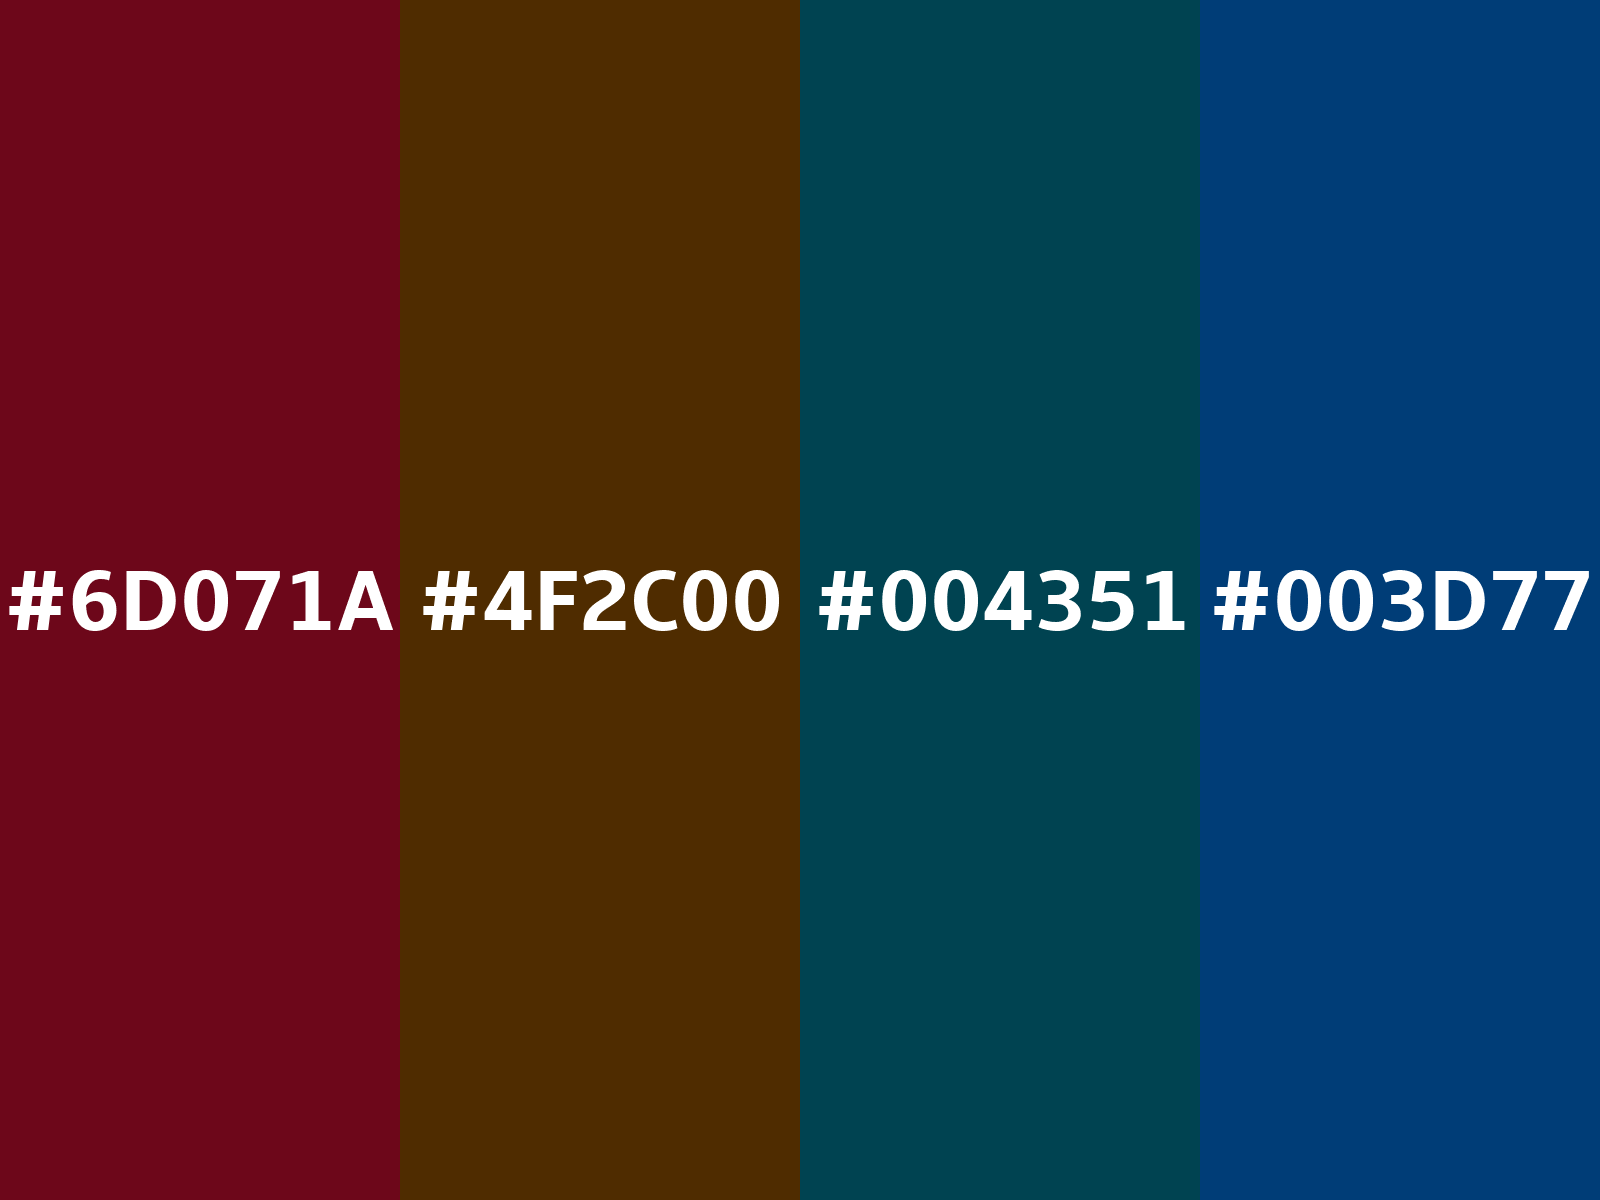 6D071A Hex Color, RGB: 109, 7, 26